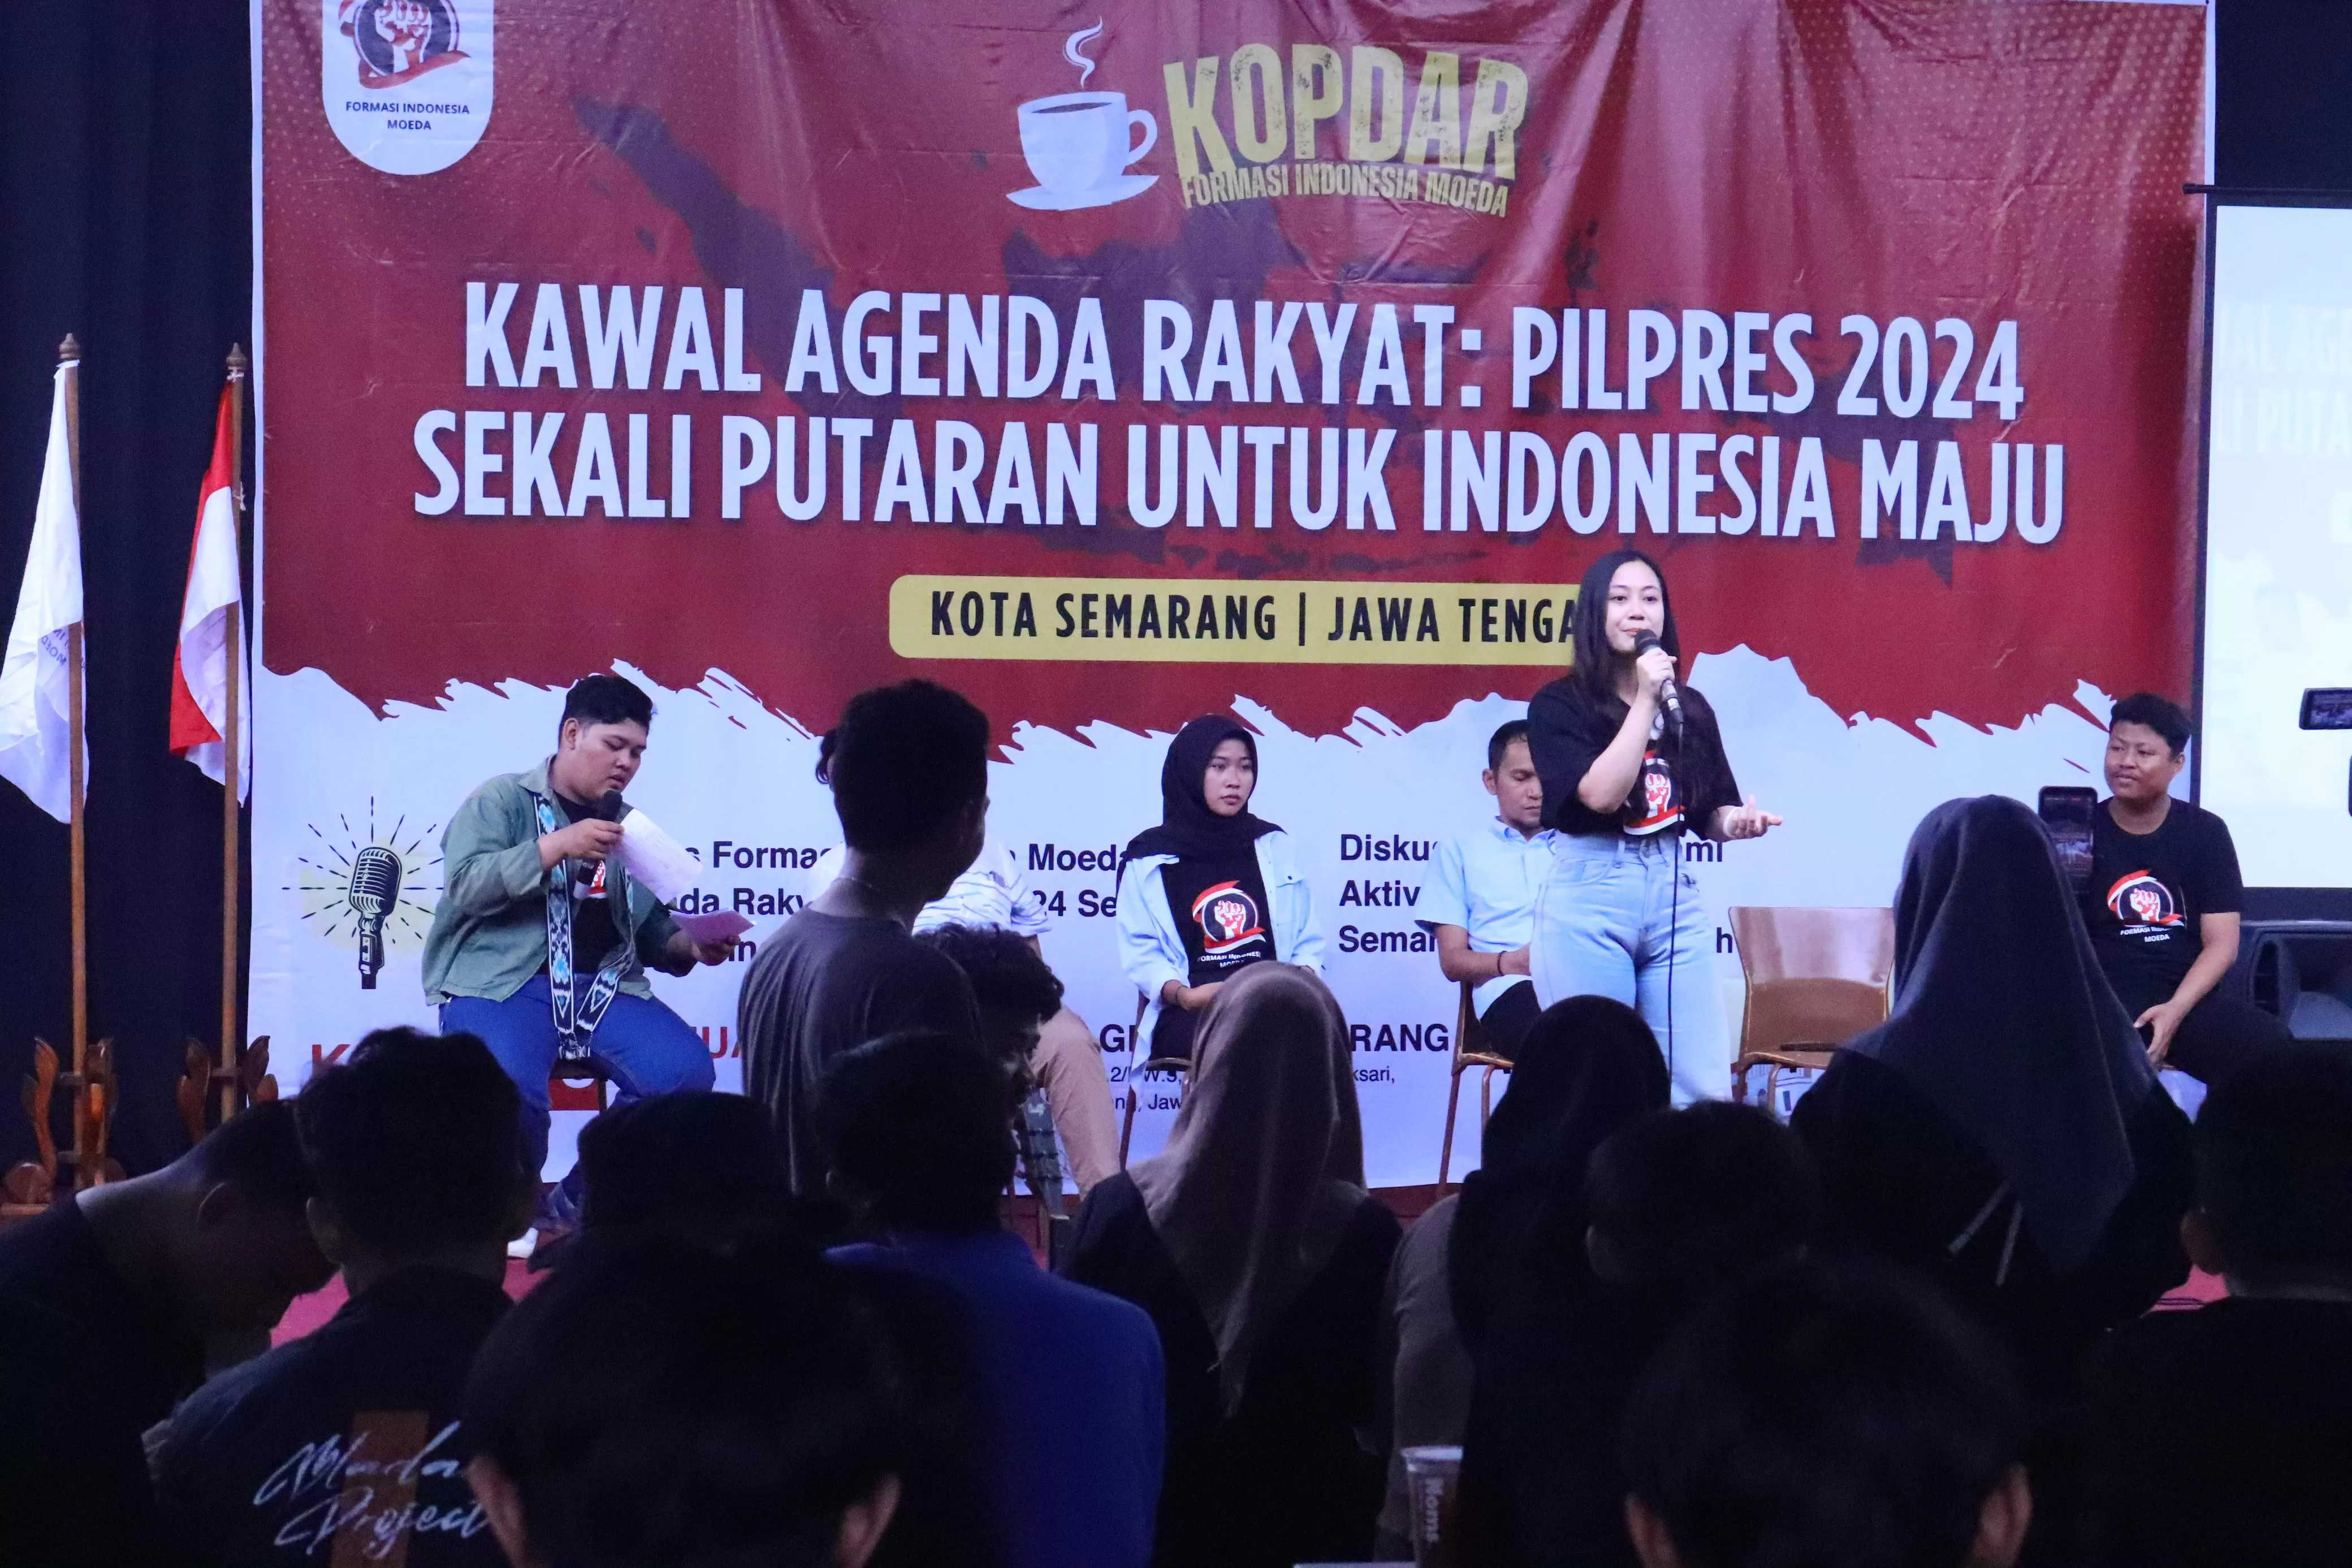 Kopdar Aktivis Mahasiswa di Semarang, Setuju Pilpres Sekali Putaran, Prabowo - Gibran Representasi Anak Muda